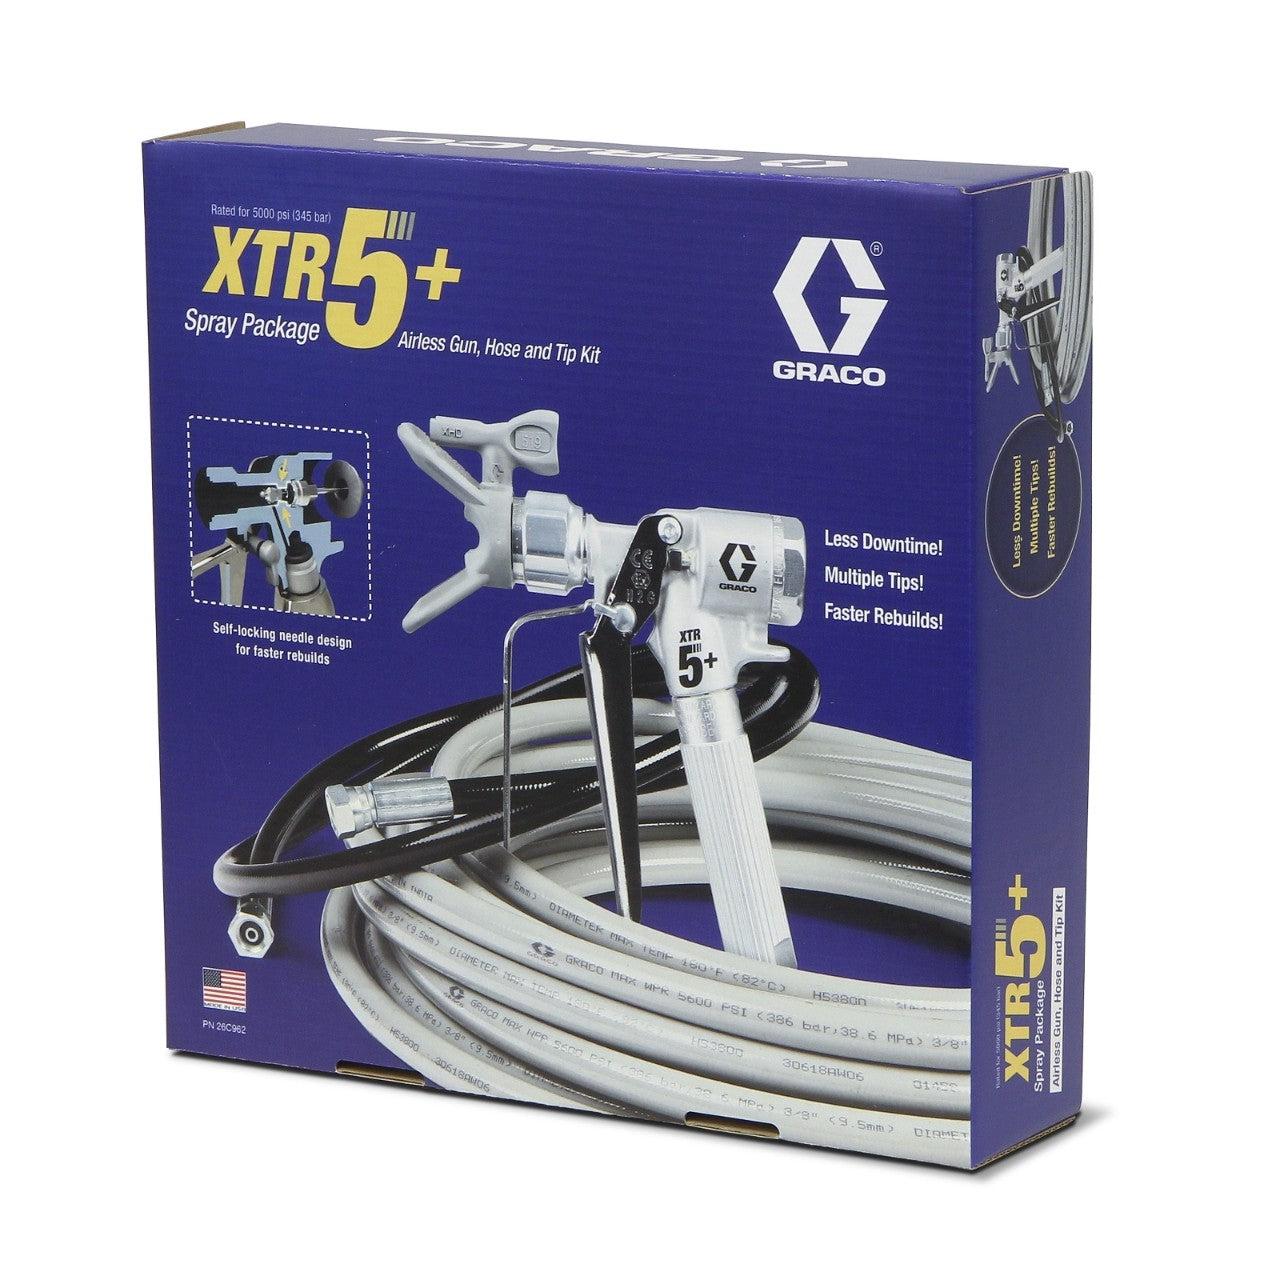 XTR5+ Gun, Hose and Tip Kit